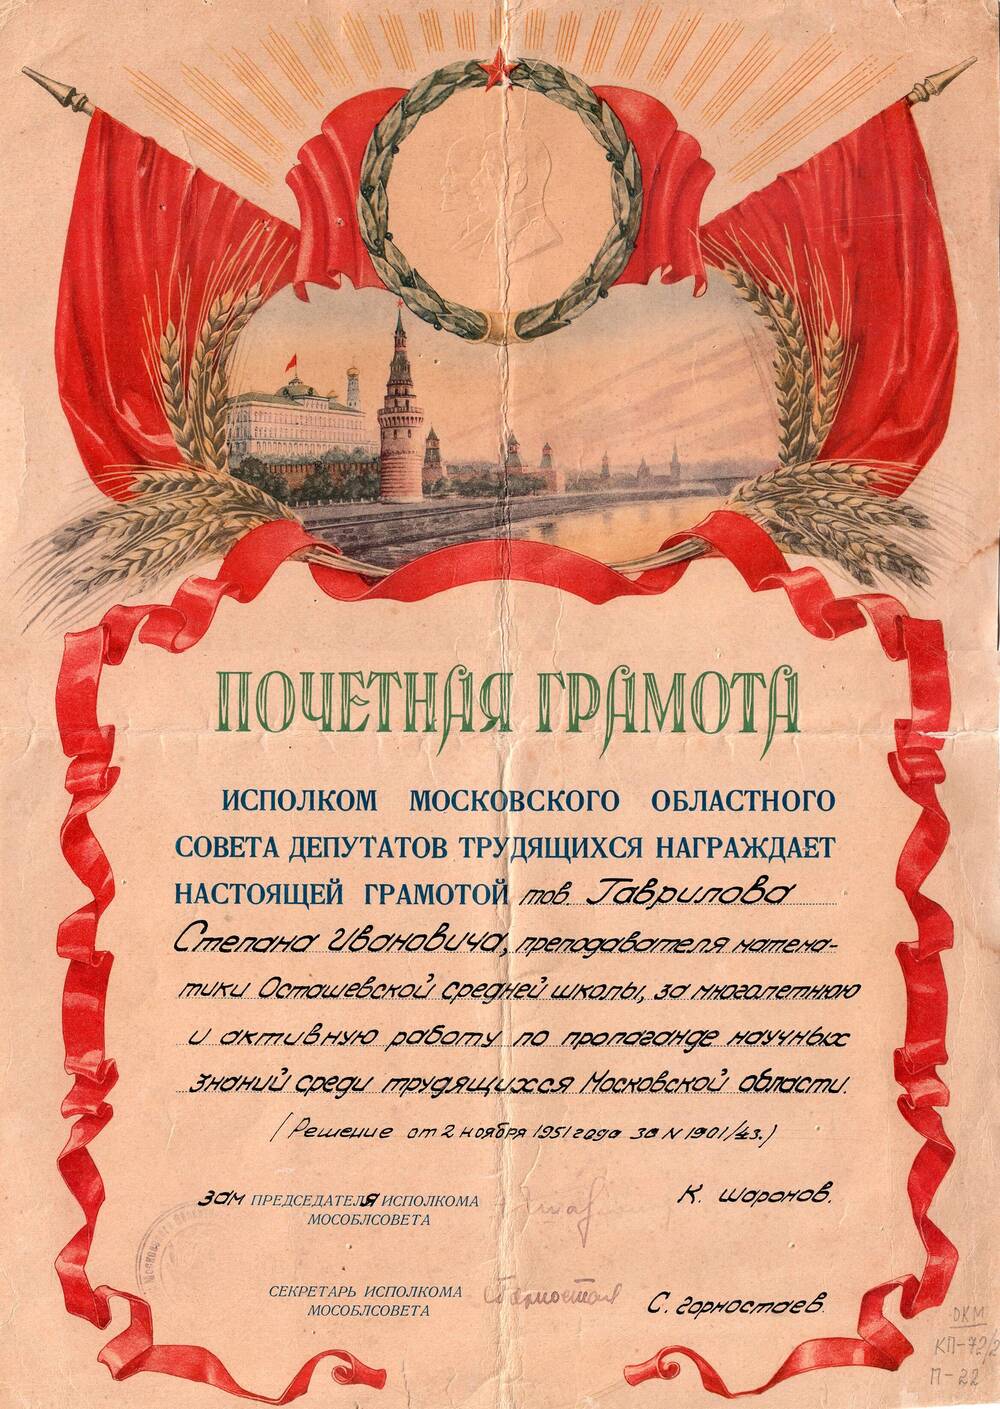 Почетная грамота, награжден Гаврилов Степан Иванович, решение от 2 ноября 1951 г.